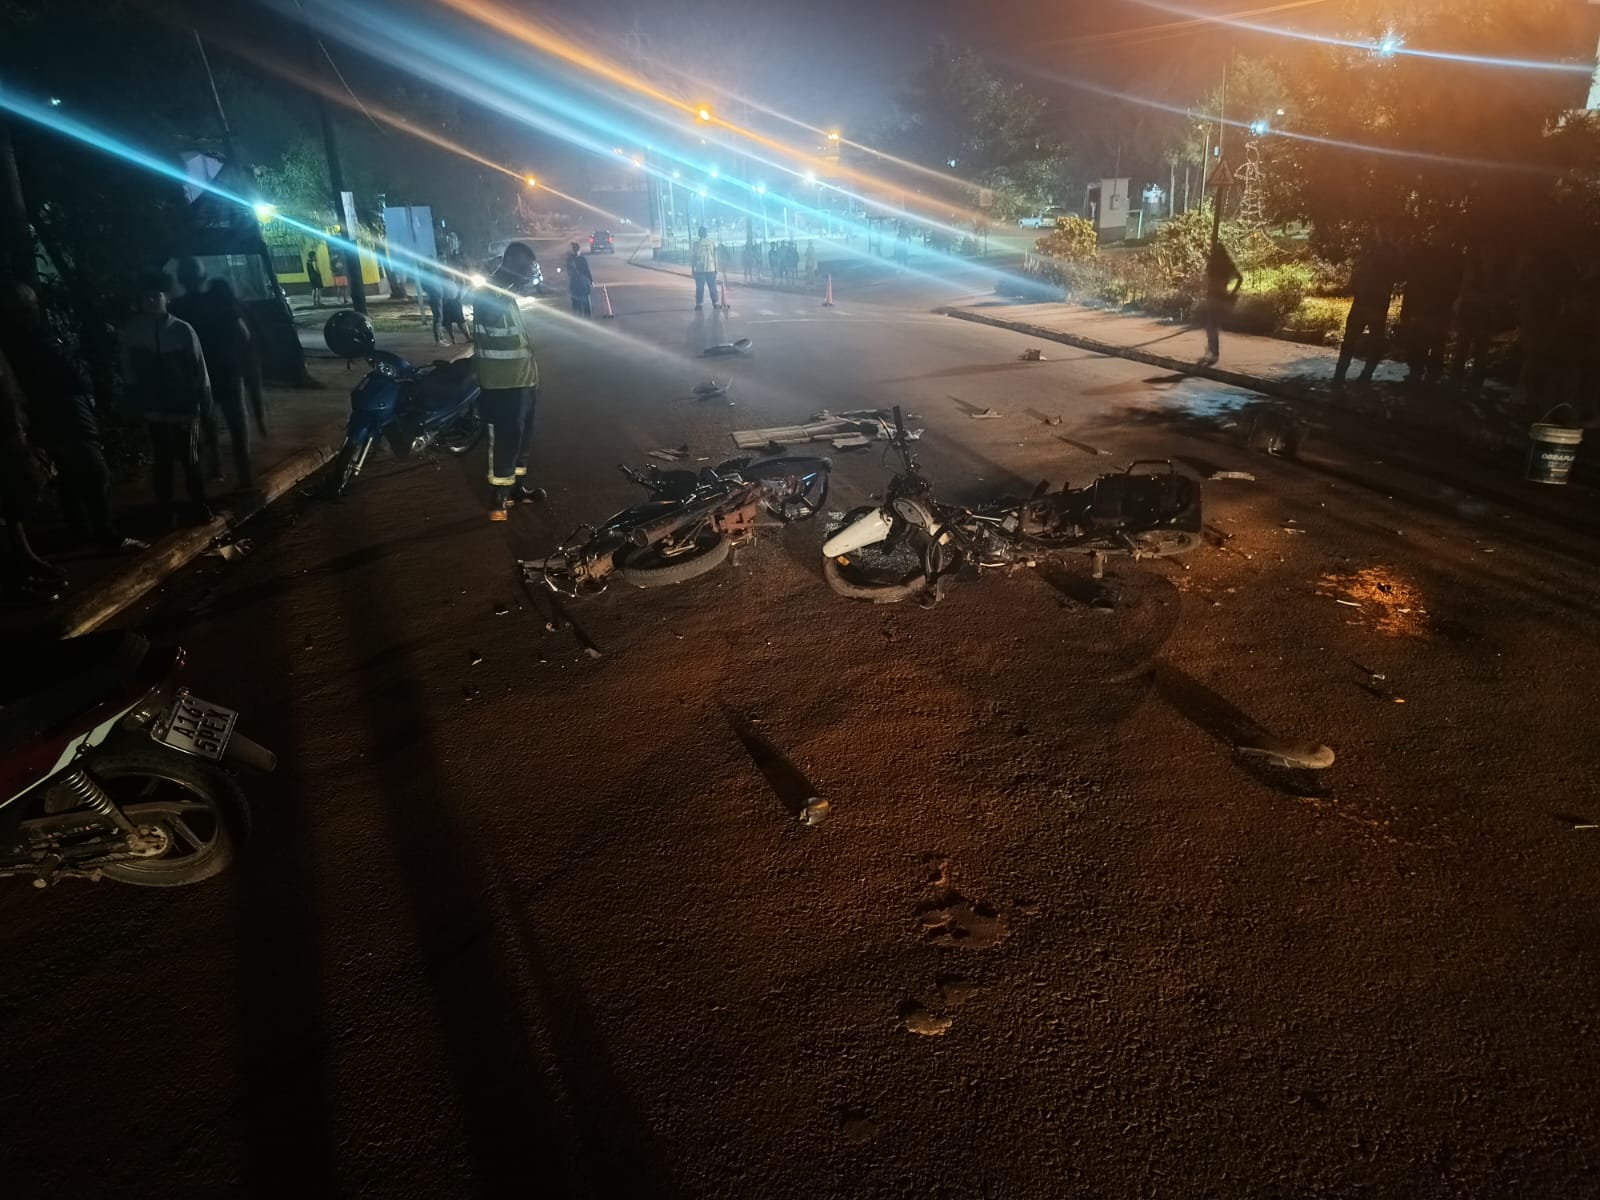 Iguazú: Un motociclista colisiono con una motocicleta y esta colisionó con una tercera, hay 5 heridos